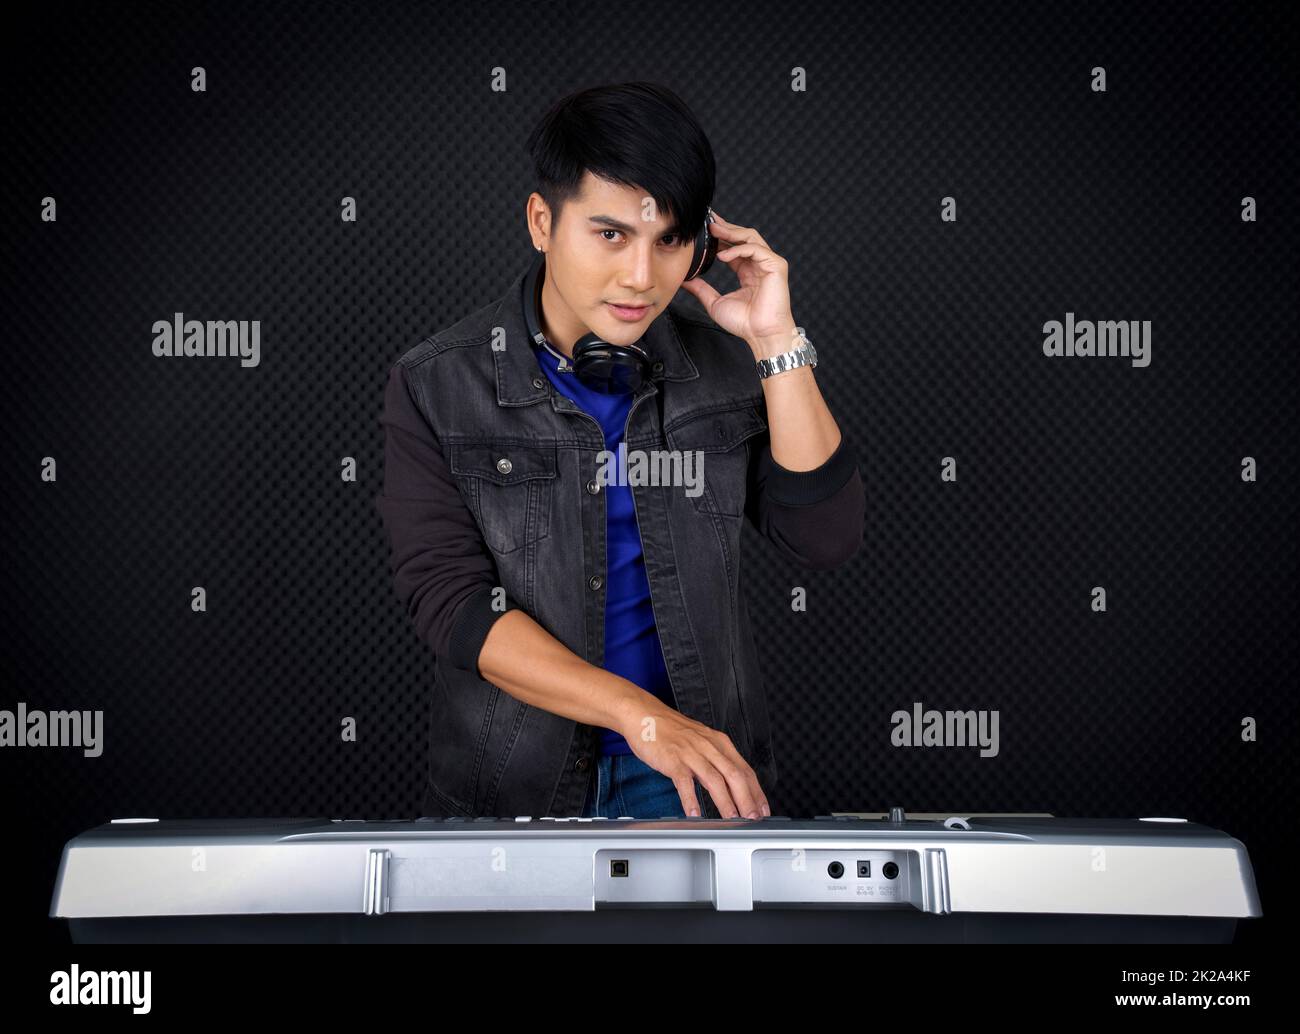 Junger asiatischer Mann mit Kopfhörern, der eine elektrische Tastatur vor der schwarzen schalldichten Wand spielt. Musiker, der Musik in einem professionellen Aufnahmestudio produziert. Stockfoto